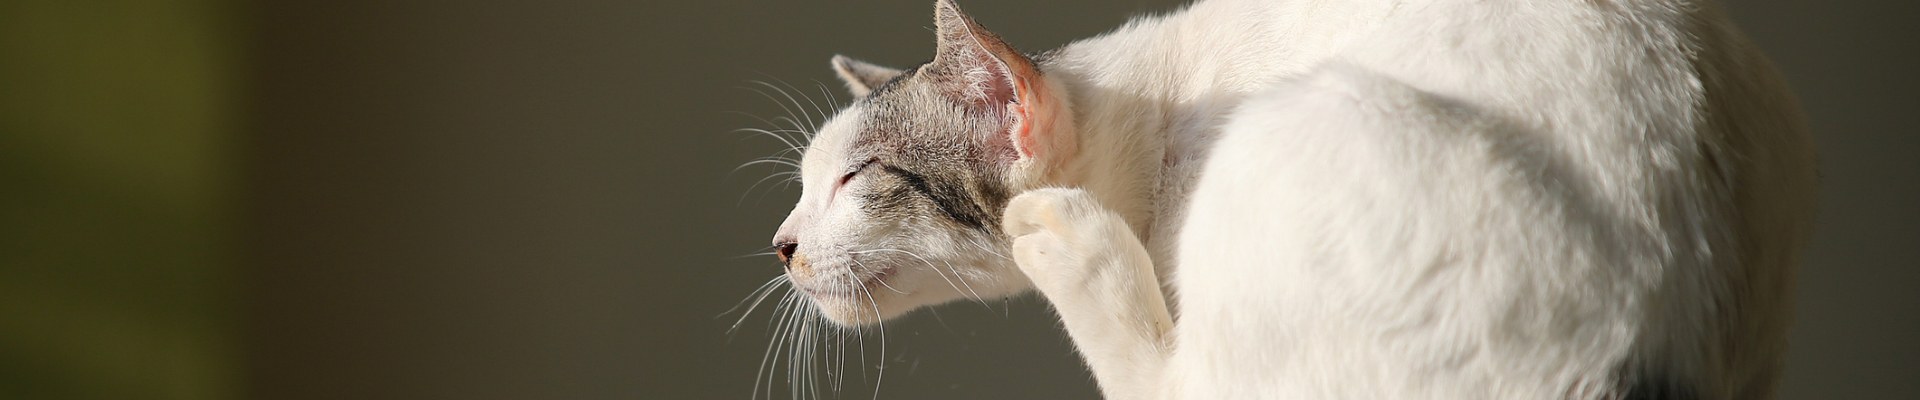 Un gato gris y blanco rascándose una oreja